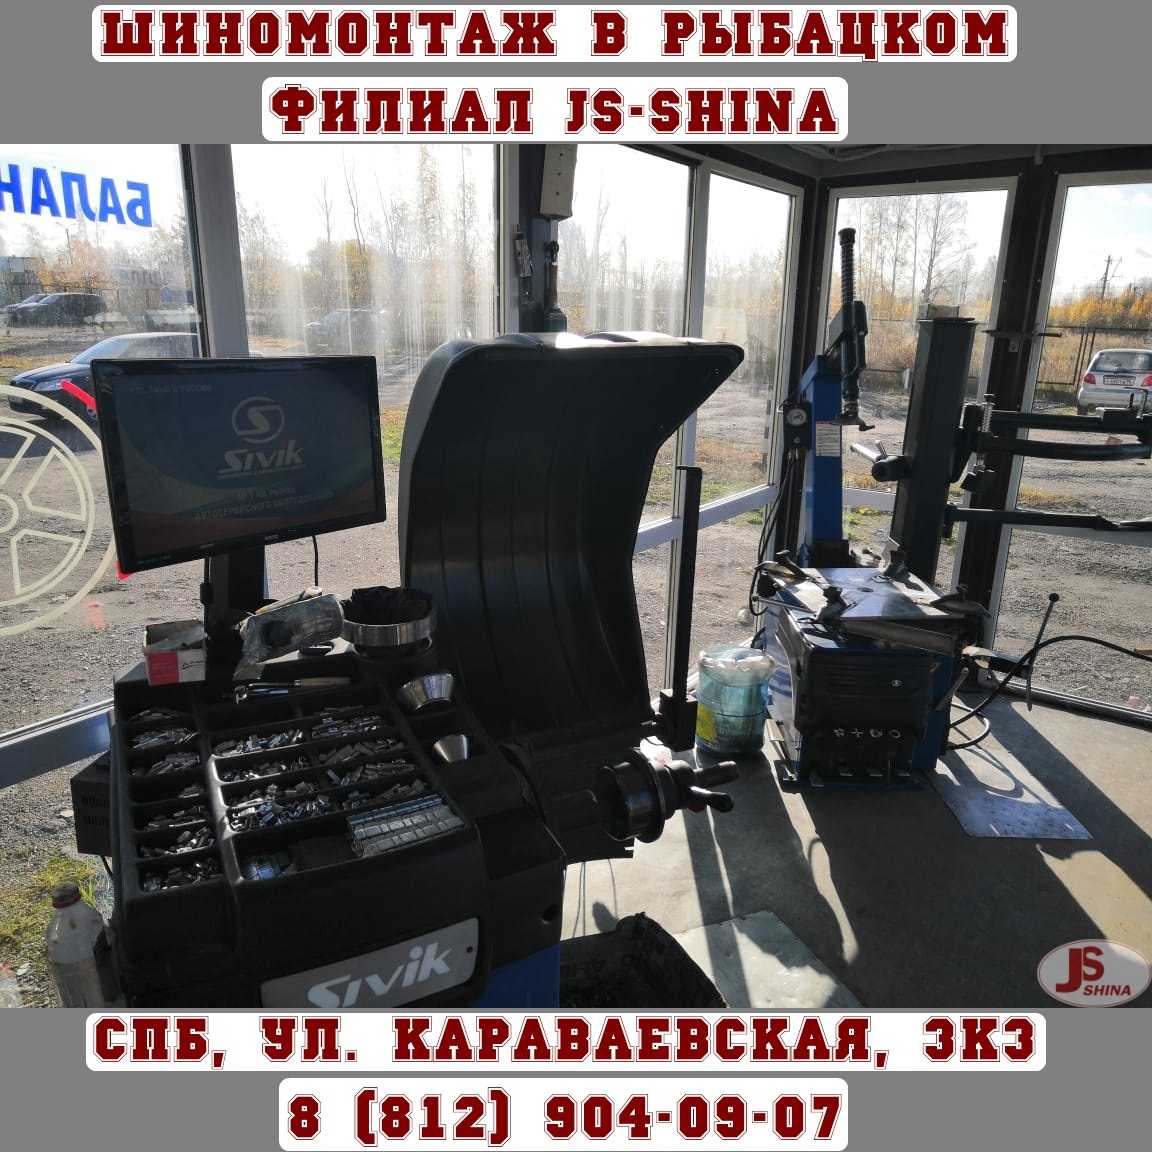 Шиномонтаж 24 часа в СПб, ул. Караваевская, д. 3, к. 3 ремонт дисков